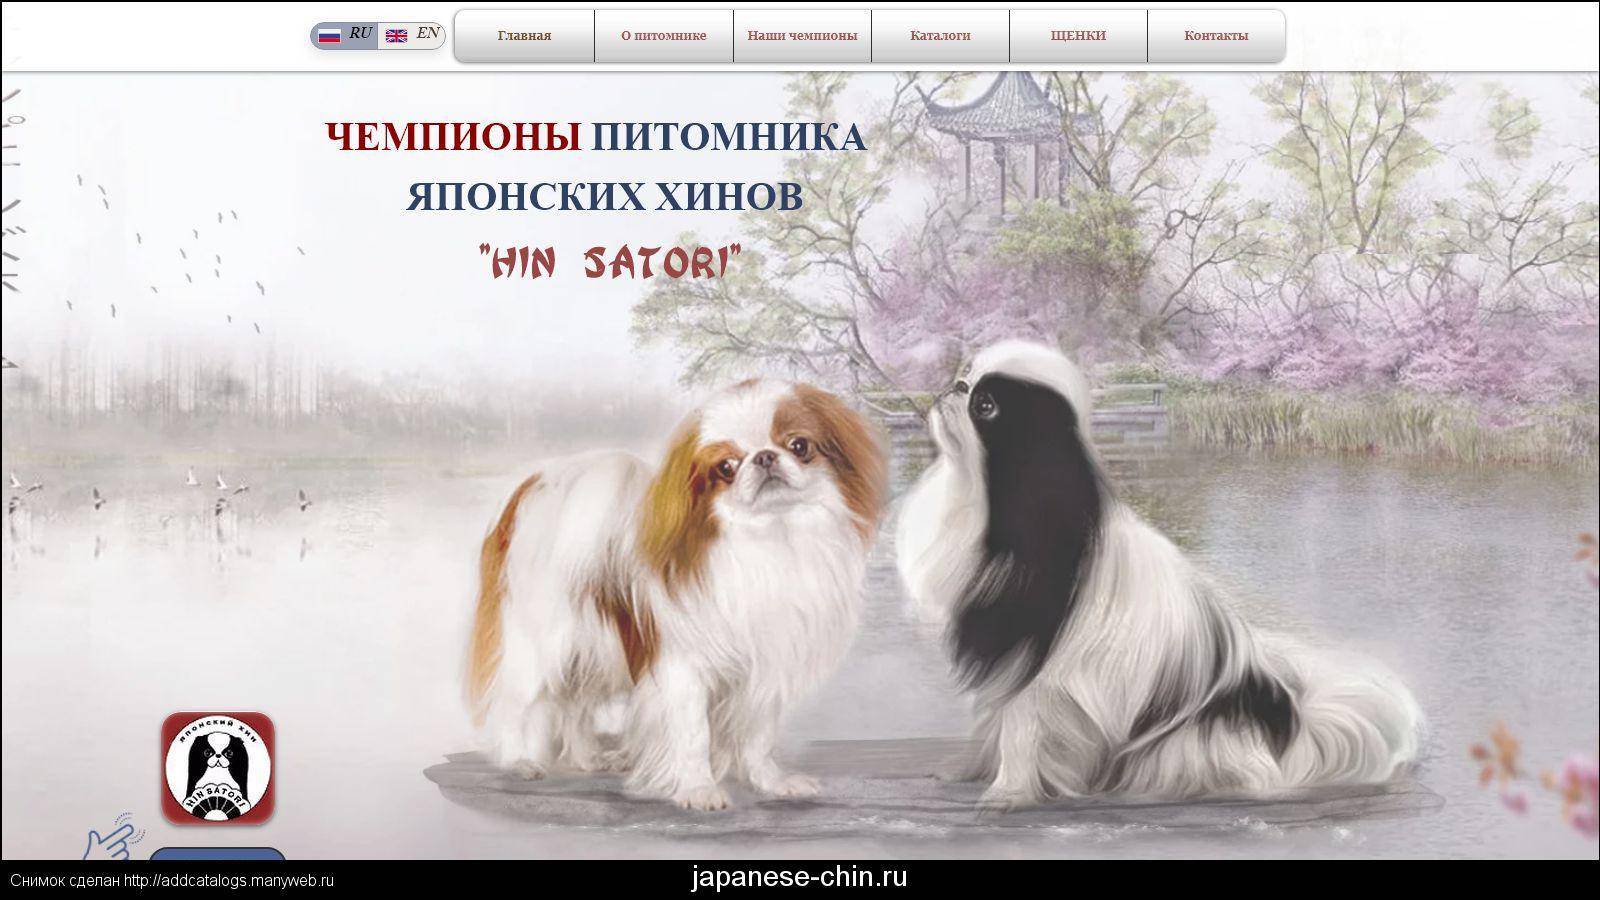 Японский хин - описание и характер собаки, воспитание щенков, содержание и кормление, отзывы владельцев